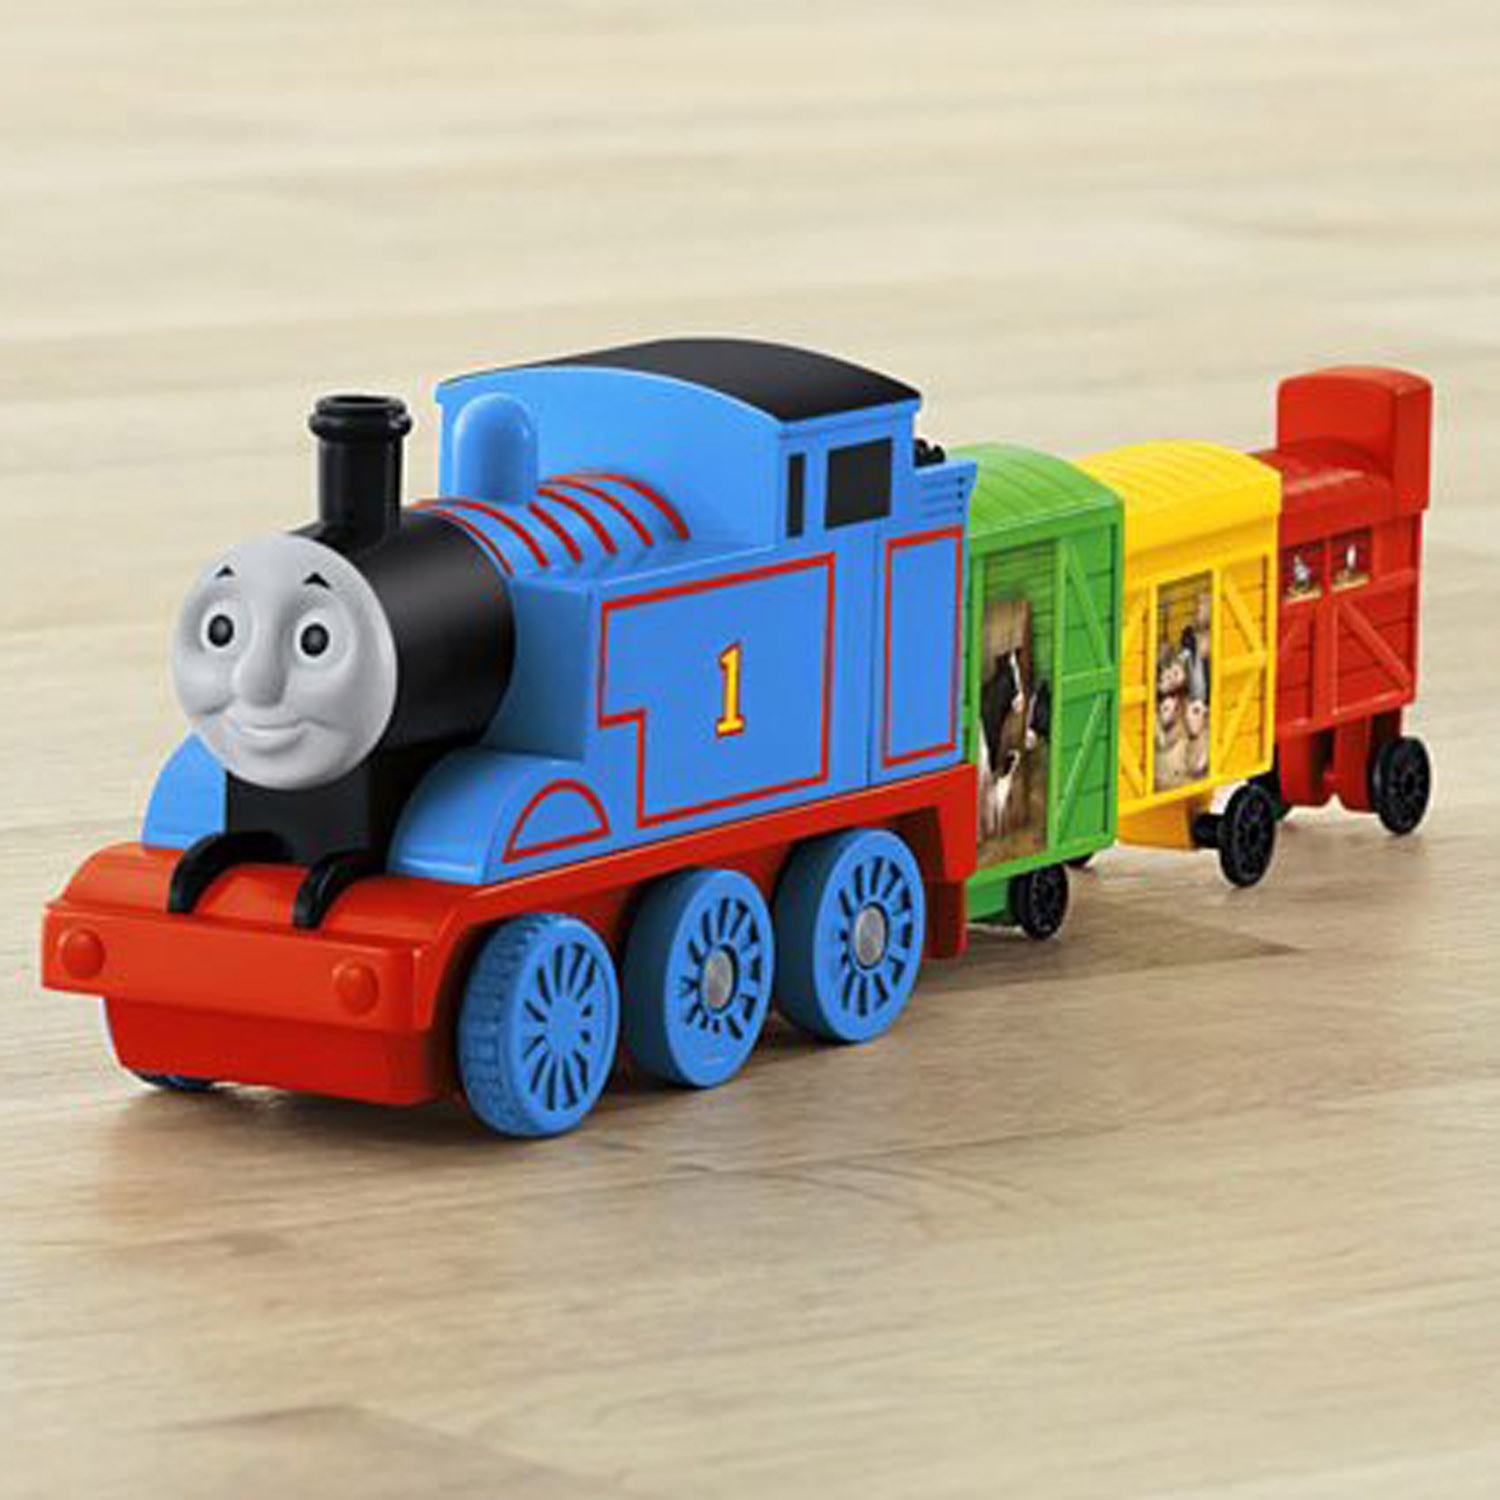 Thomas the Train Toys - Thomas' Stretching Cargo at ToyStop